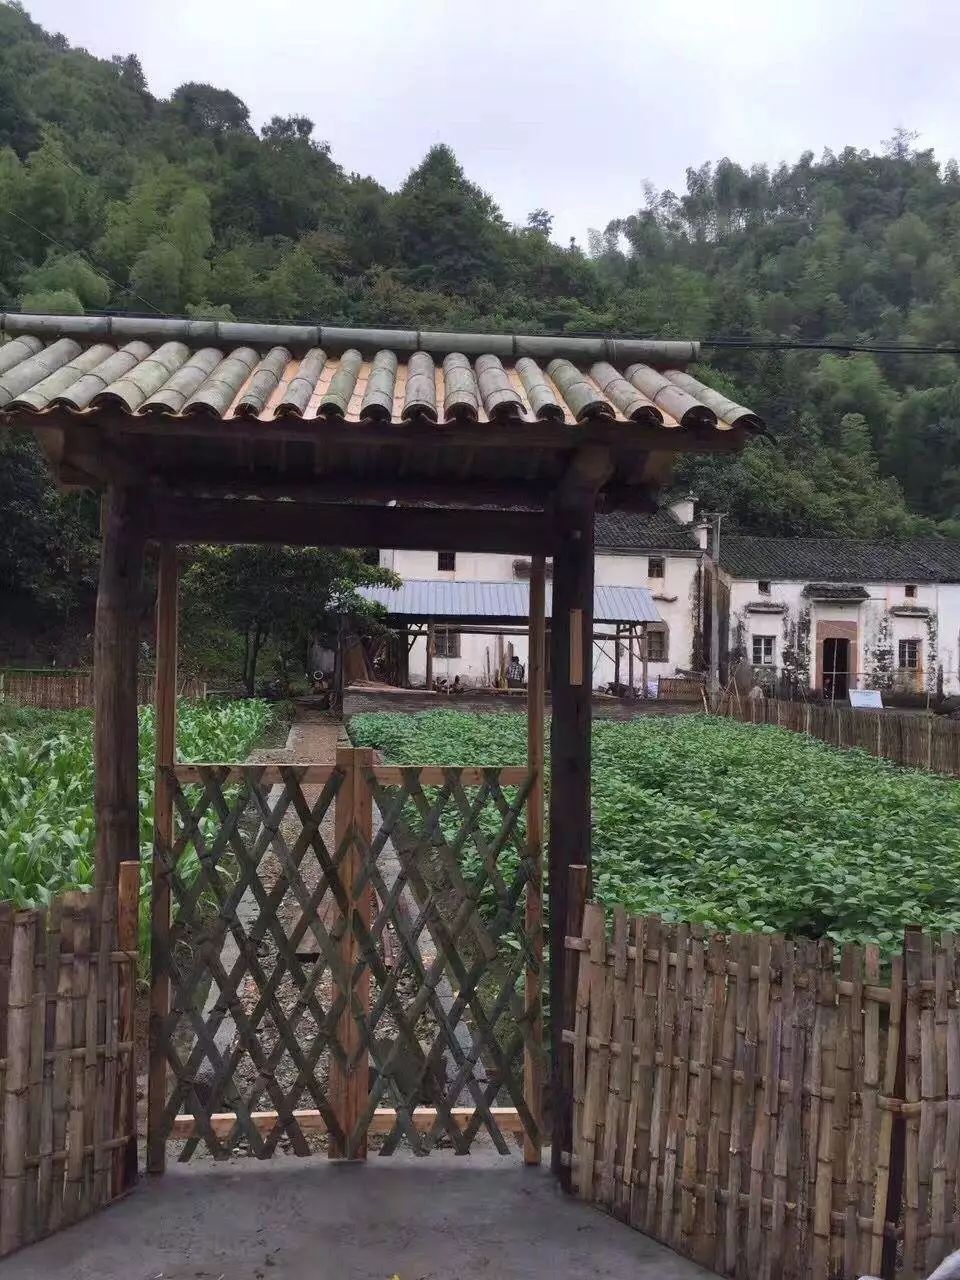 徐州田园牧歌农场图片